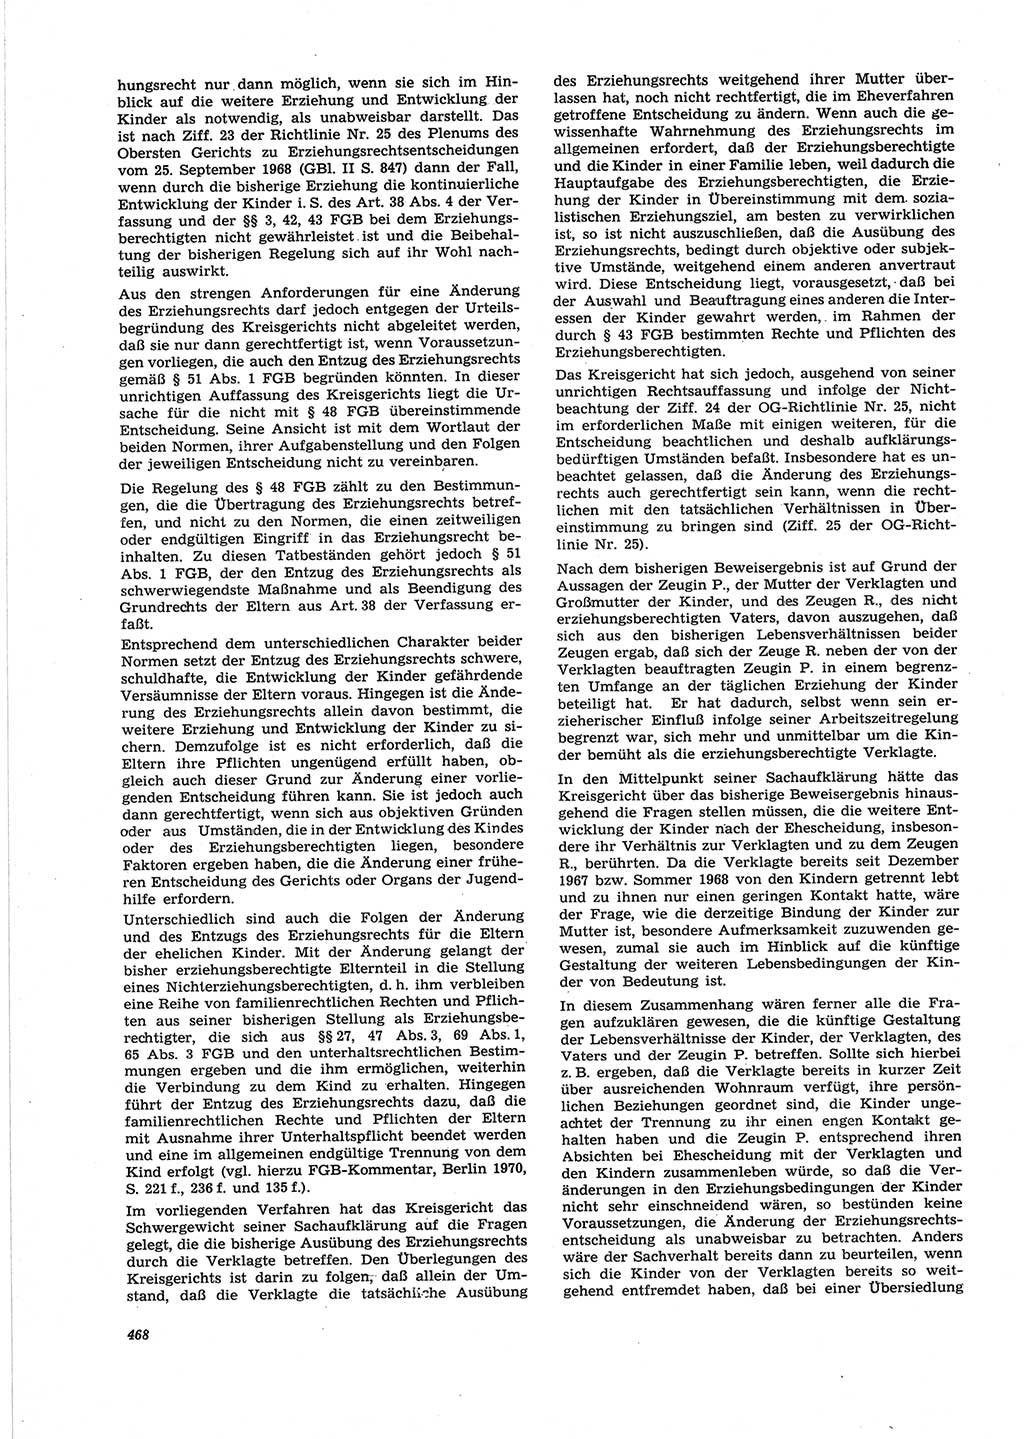 Neue Justiz (NJ), Zeitschrift für Recht und Rechtswissenschaft [Deutsche Demokratische Republik (DDR)], 25. Jahrgang 1971, Seite 468 (NJ DDR 1971, S. 468)